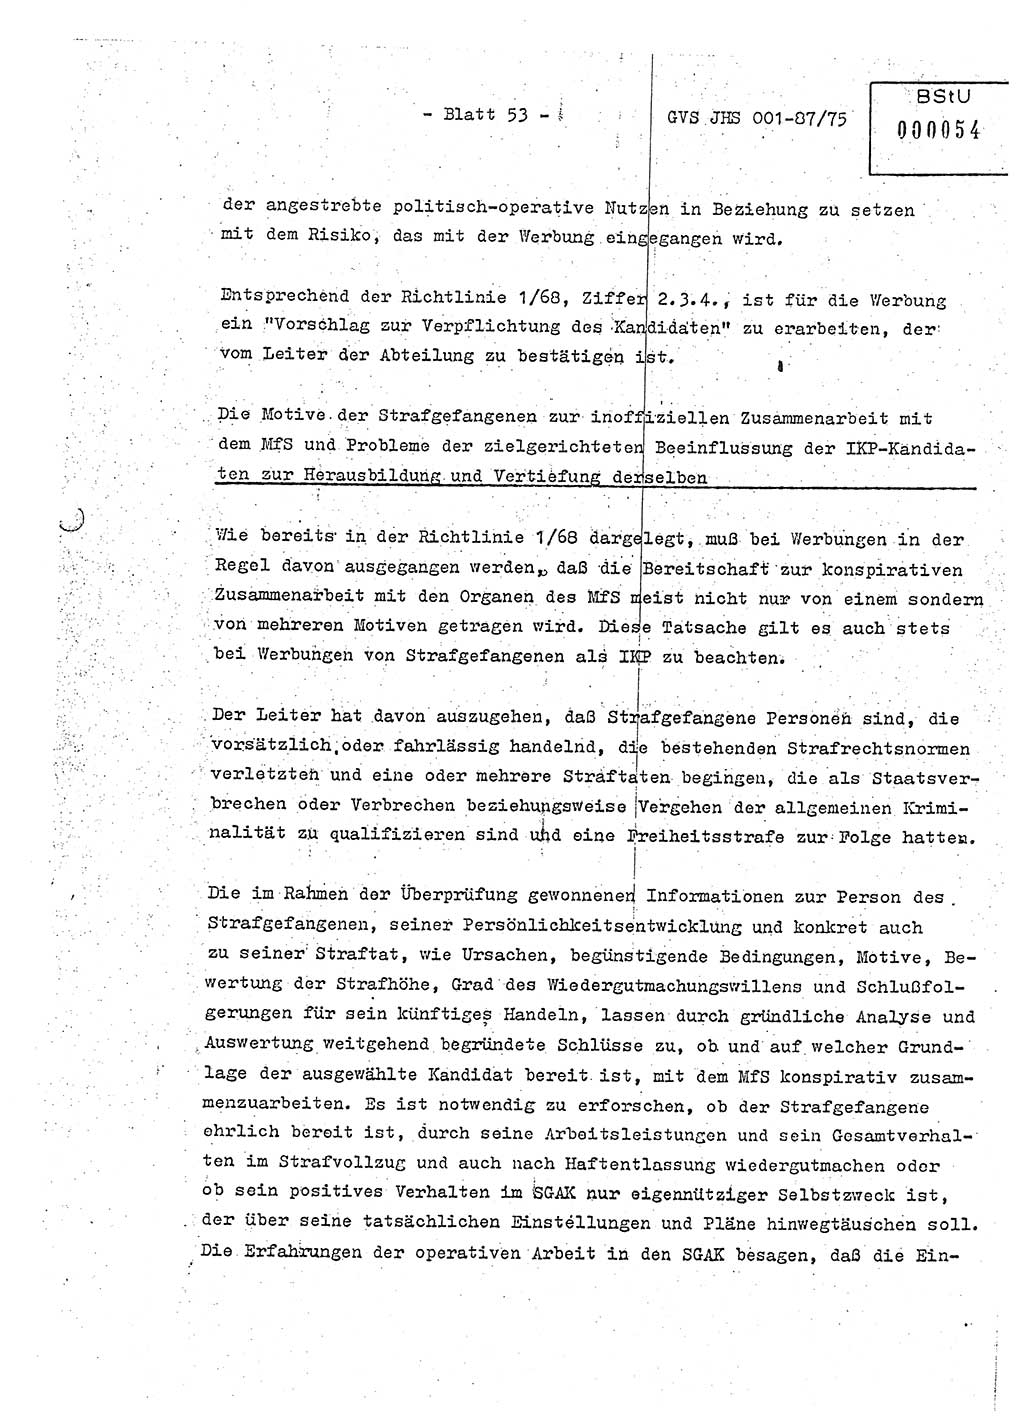 Diplomarbeit Hauptmann Volkmar Heinz (Abt. ⅩⅣ), Oberleutnant Lothar Rüdiger (BV Lpz. Abt. Ⅺ), Ministerium für Staatssicherheit (MfS) [Deutsche Demokratische Republik (DDR)], Juristische Hochschule (JHS), Geheime Verschlußsache (GVS) o001-87/75, Potsdam 1975, Seite 53 (Dipl.-Arb. MfS DDR JHS GVS o001-87/75 1975, S. 53)